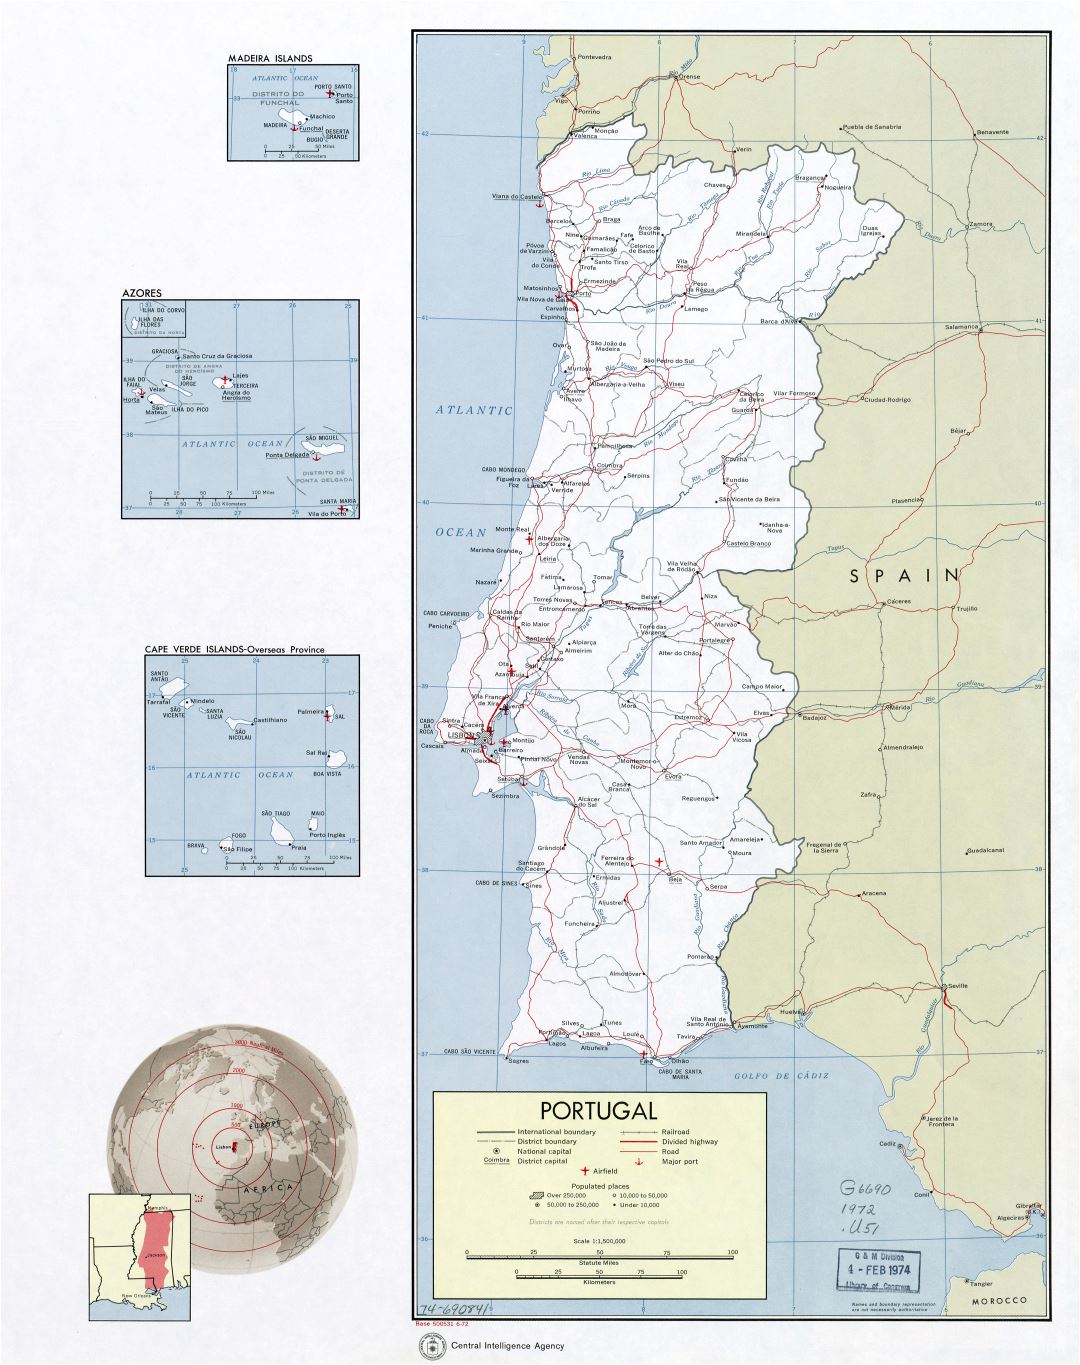 A gran escala mapa político y administrativo de Portugal con carreteras, ferrocarriles, principales ciudades, aeropuertos y puertos marítimos - 1972